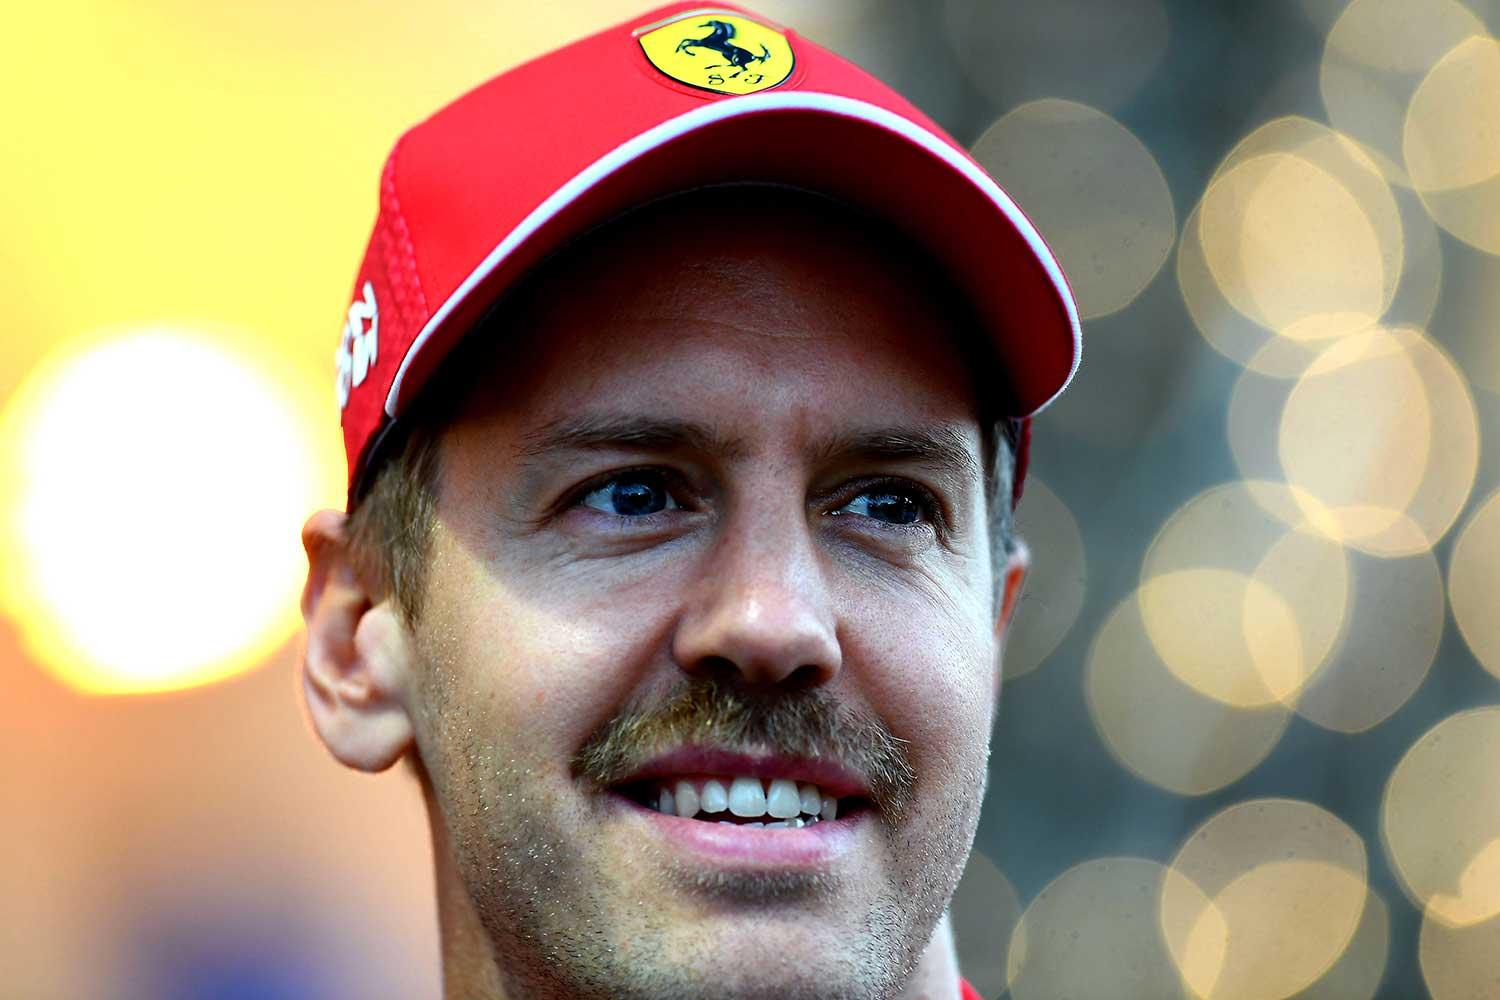 Snor van Sebastian Vettel